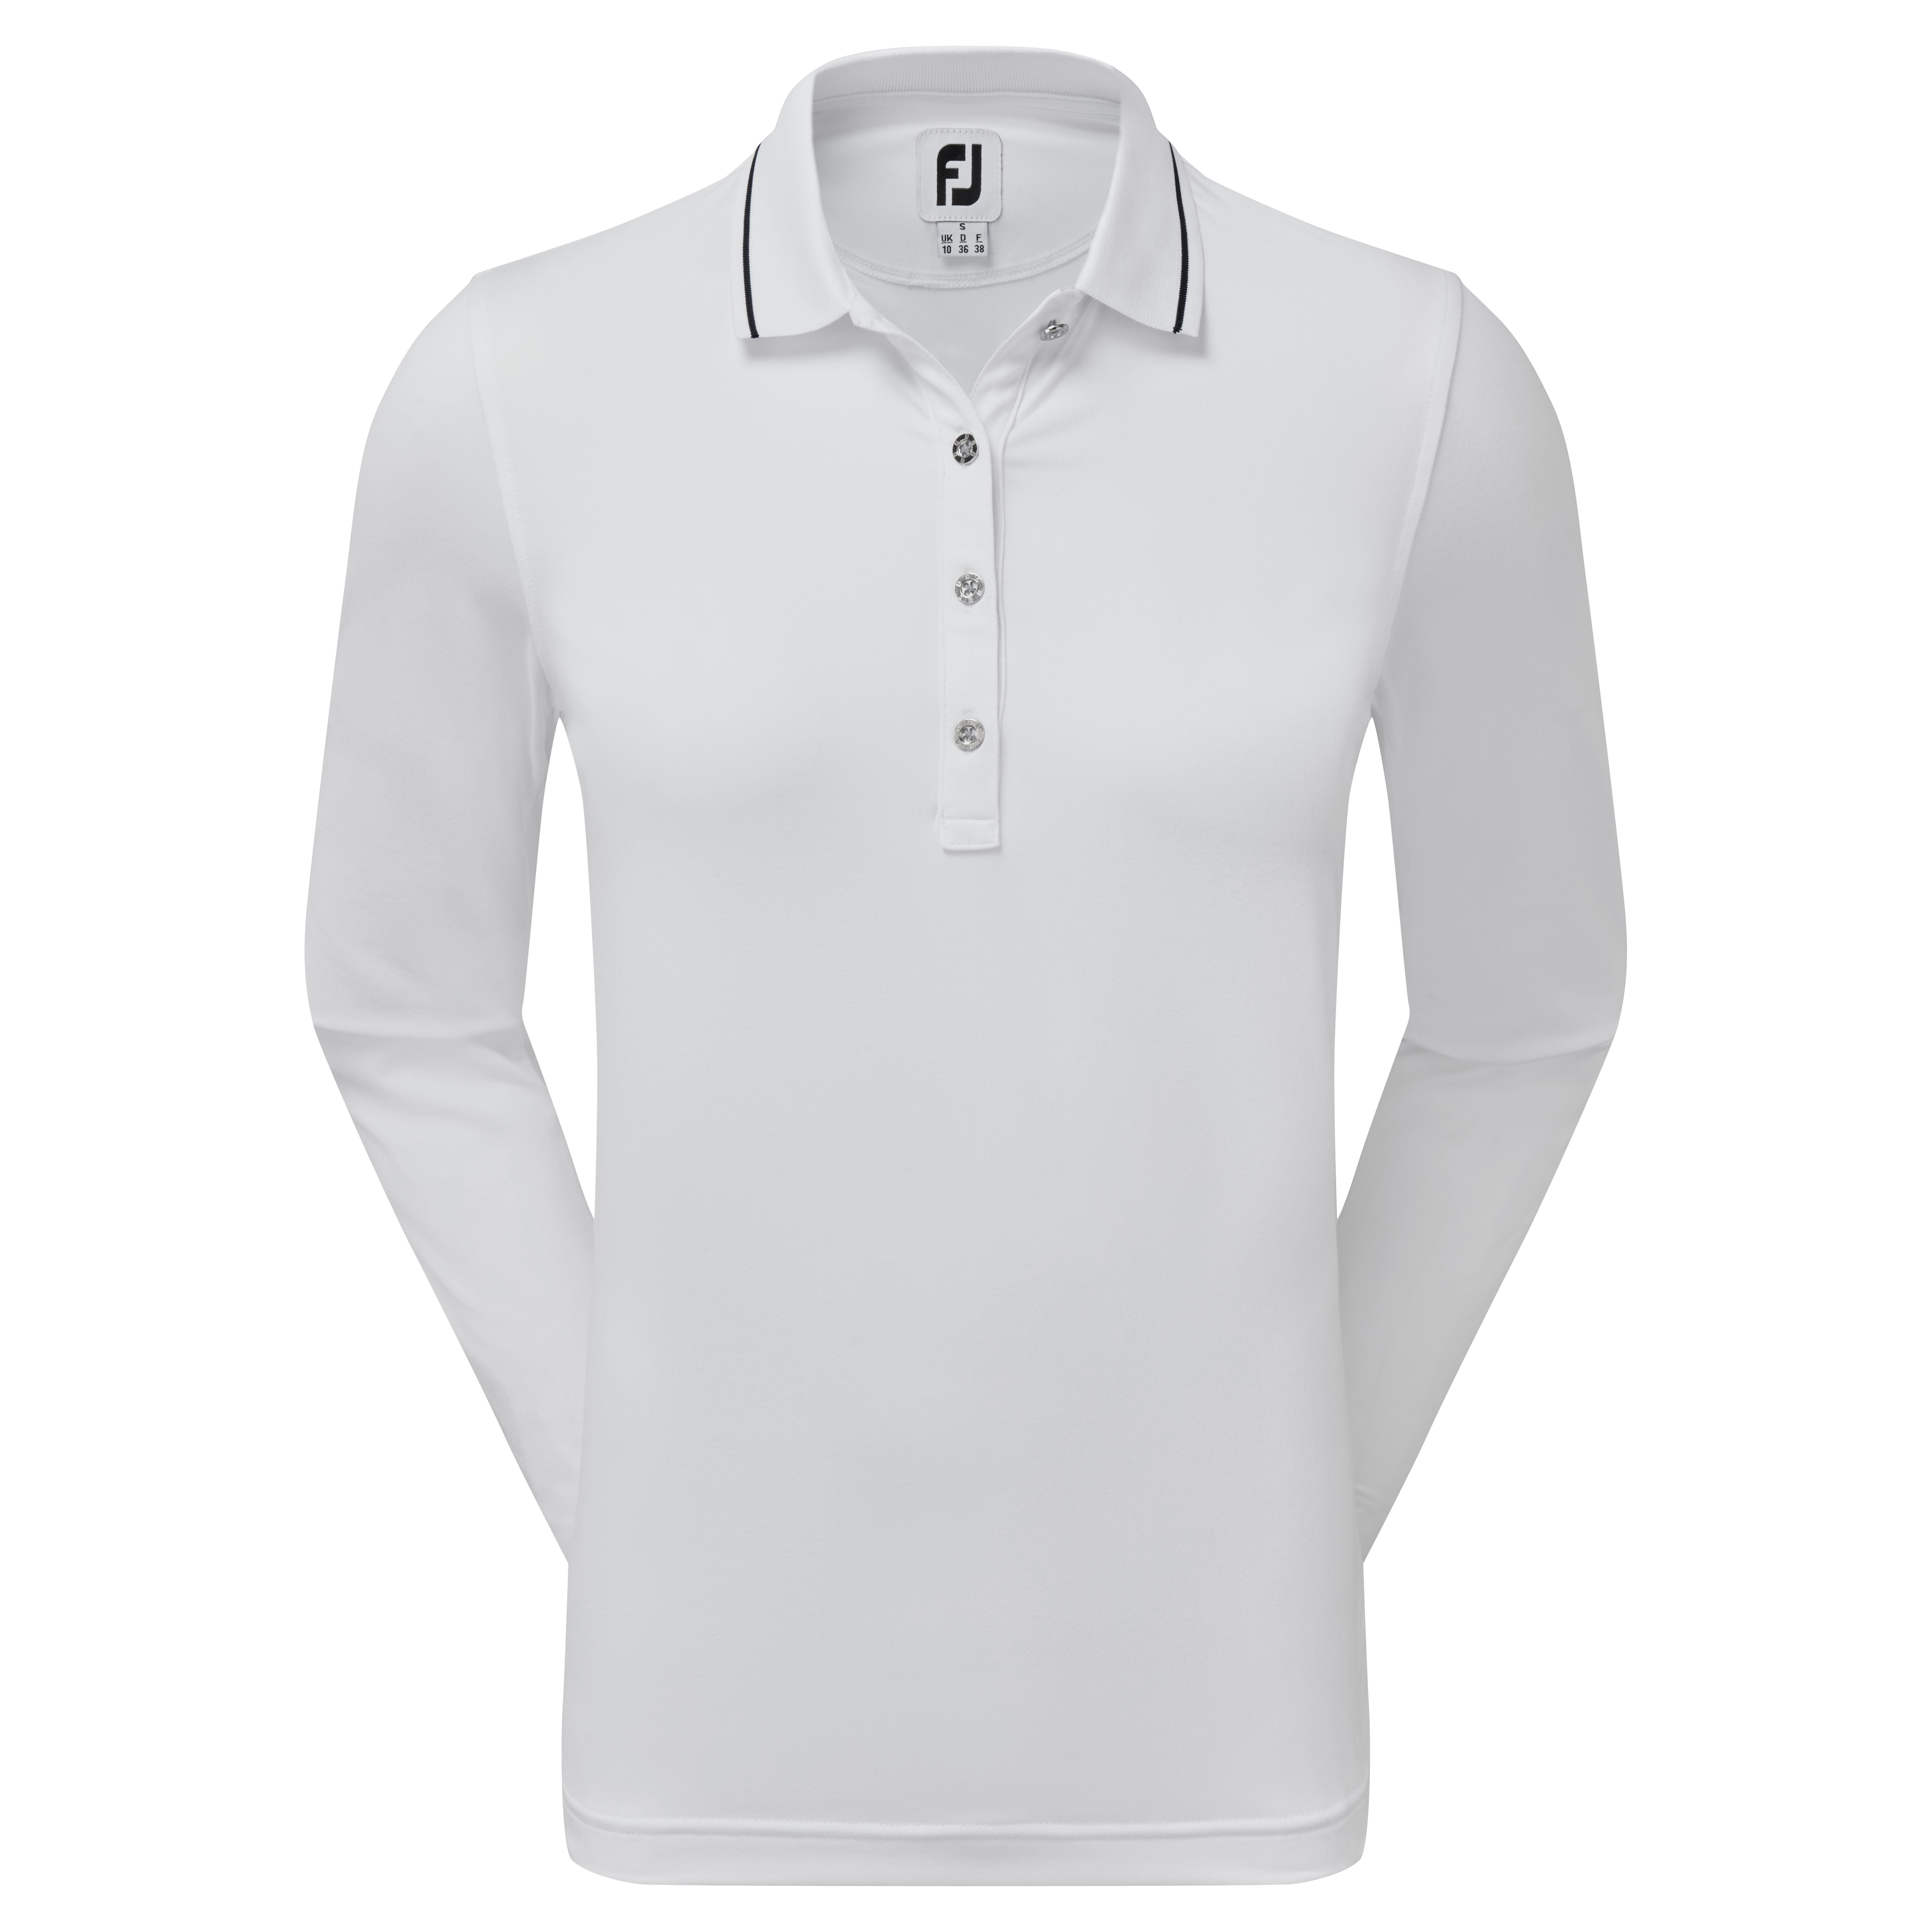 FootJoy Thermal dámské golfové triko s dlouhým rukávem, bílé, vel. XS